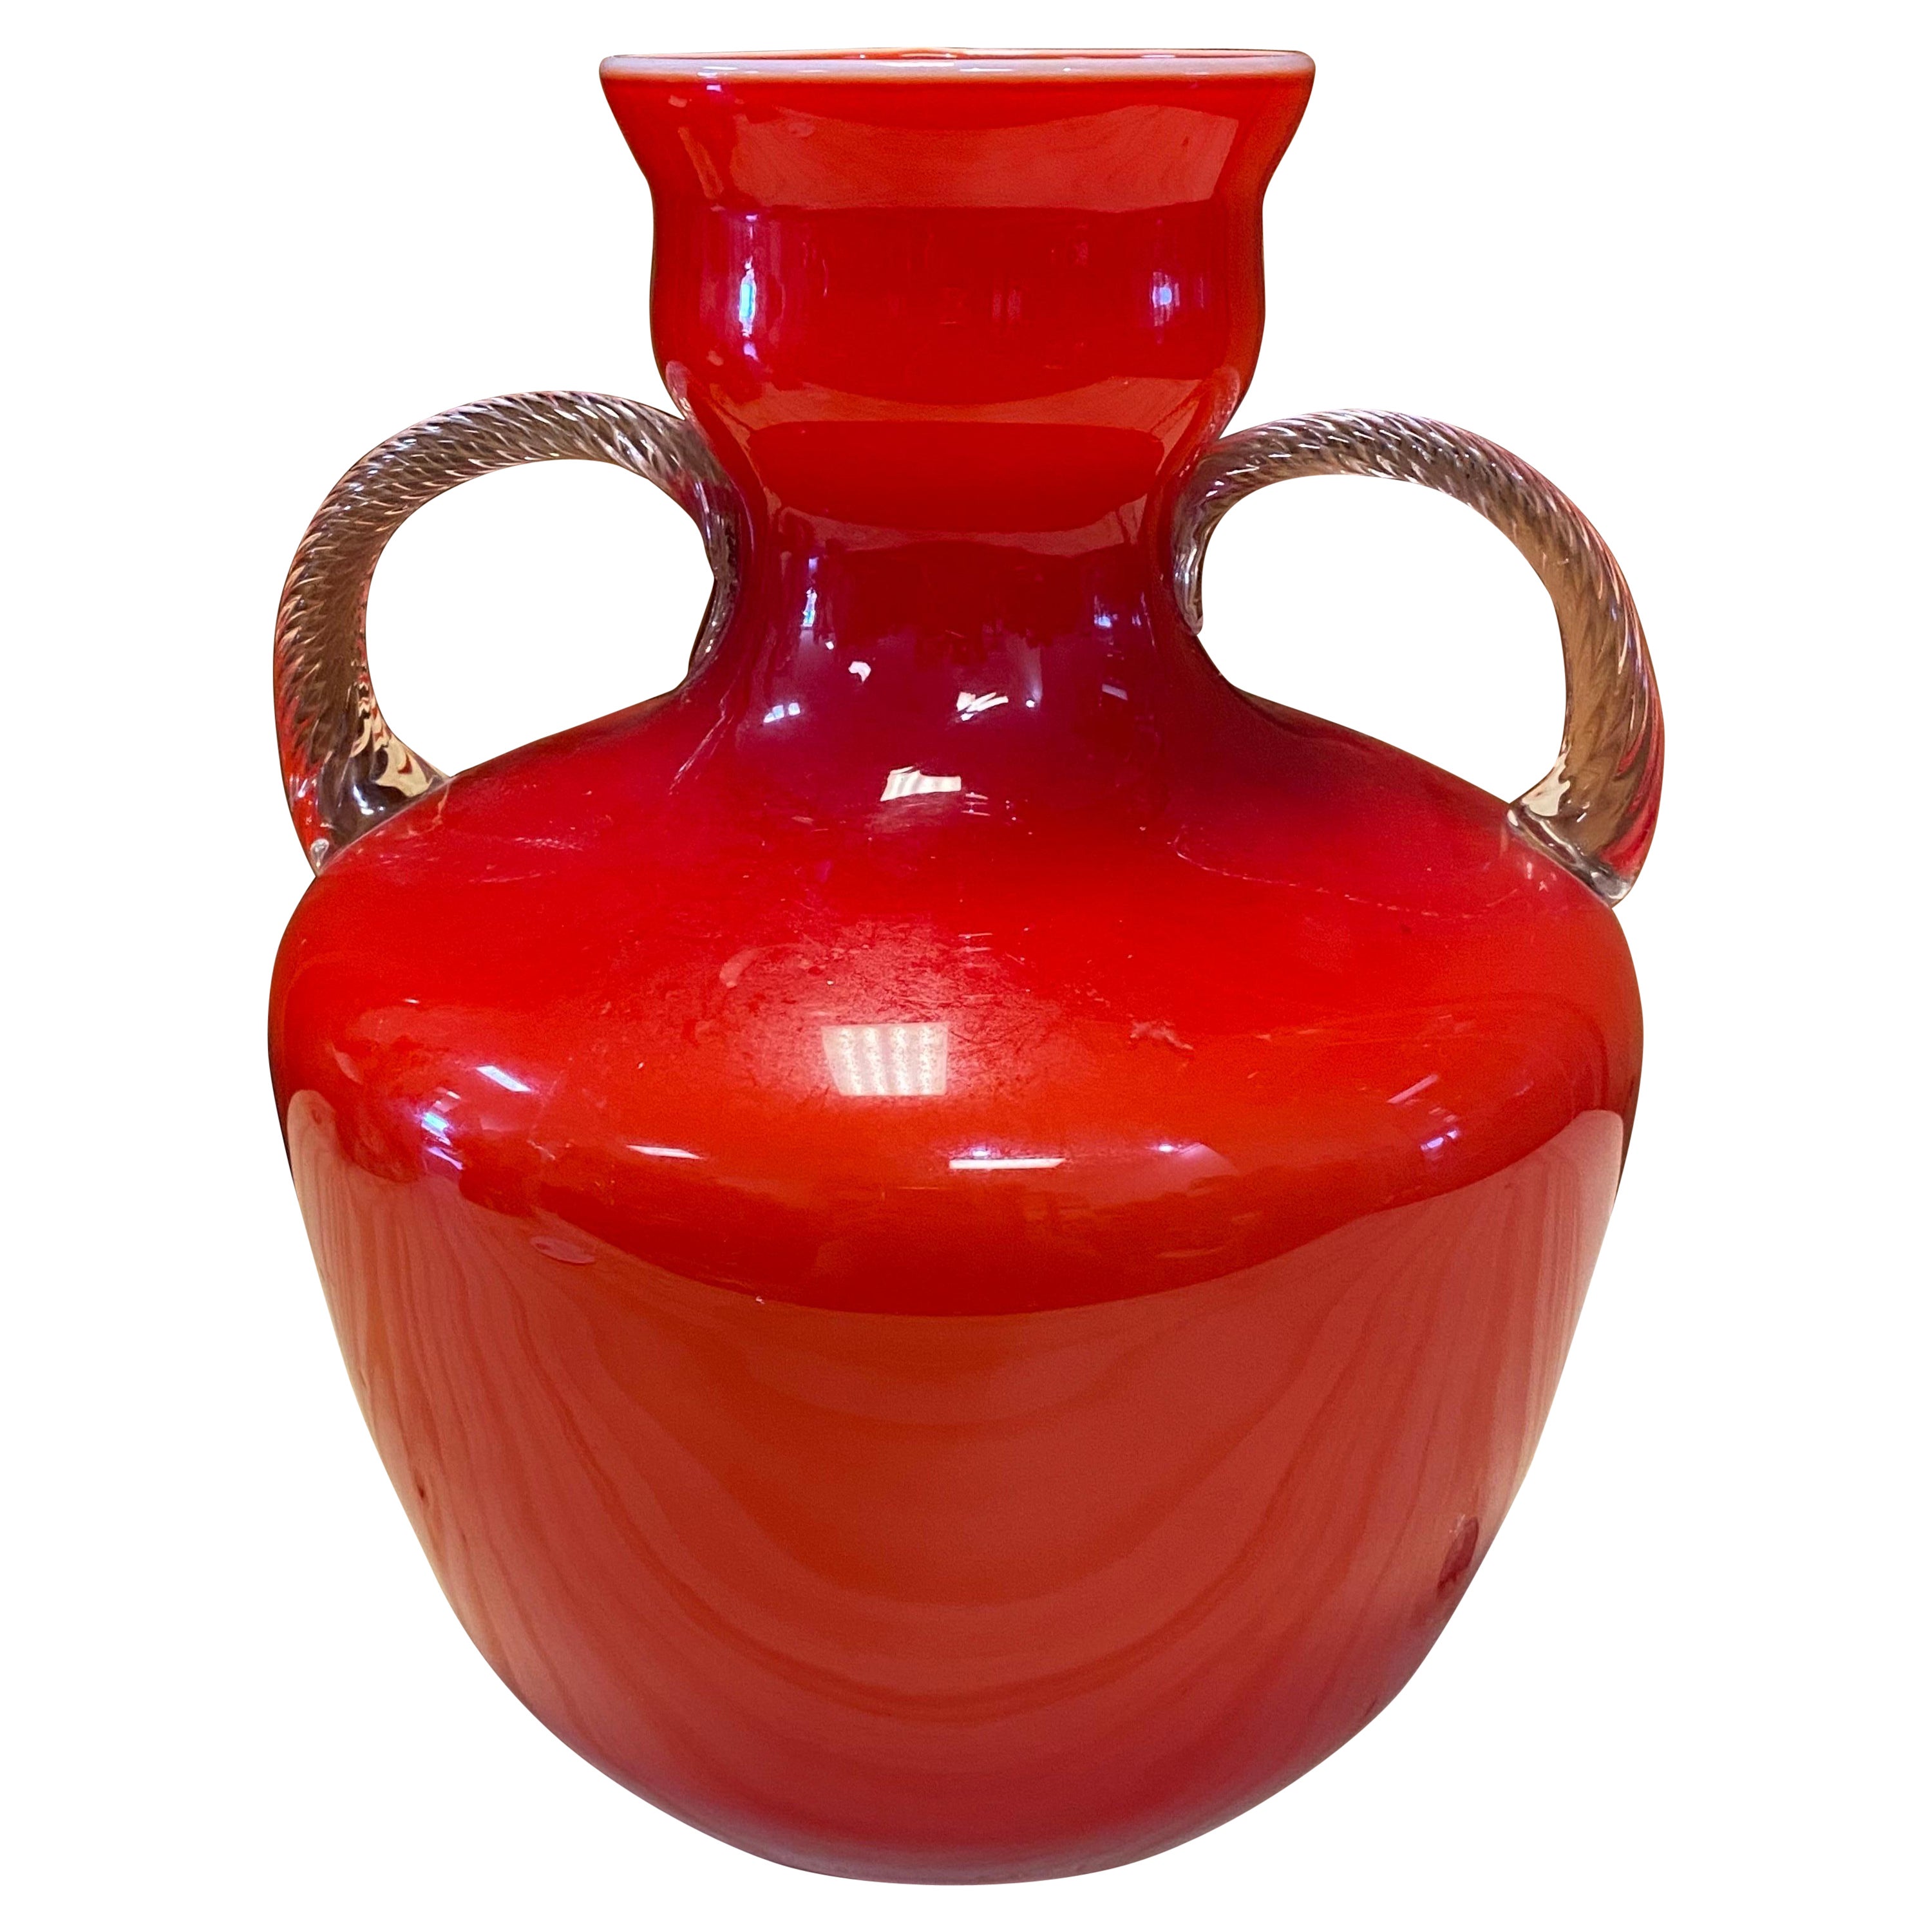 Vase en verre rouge Opalina Fiorentina des années 1960, fabriqué en Italie